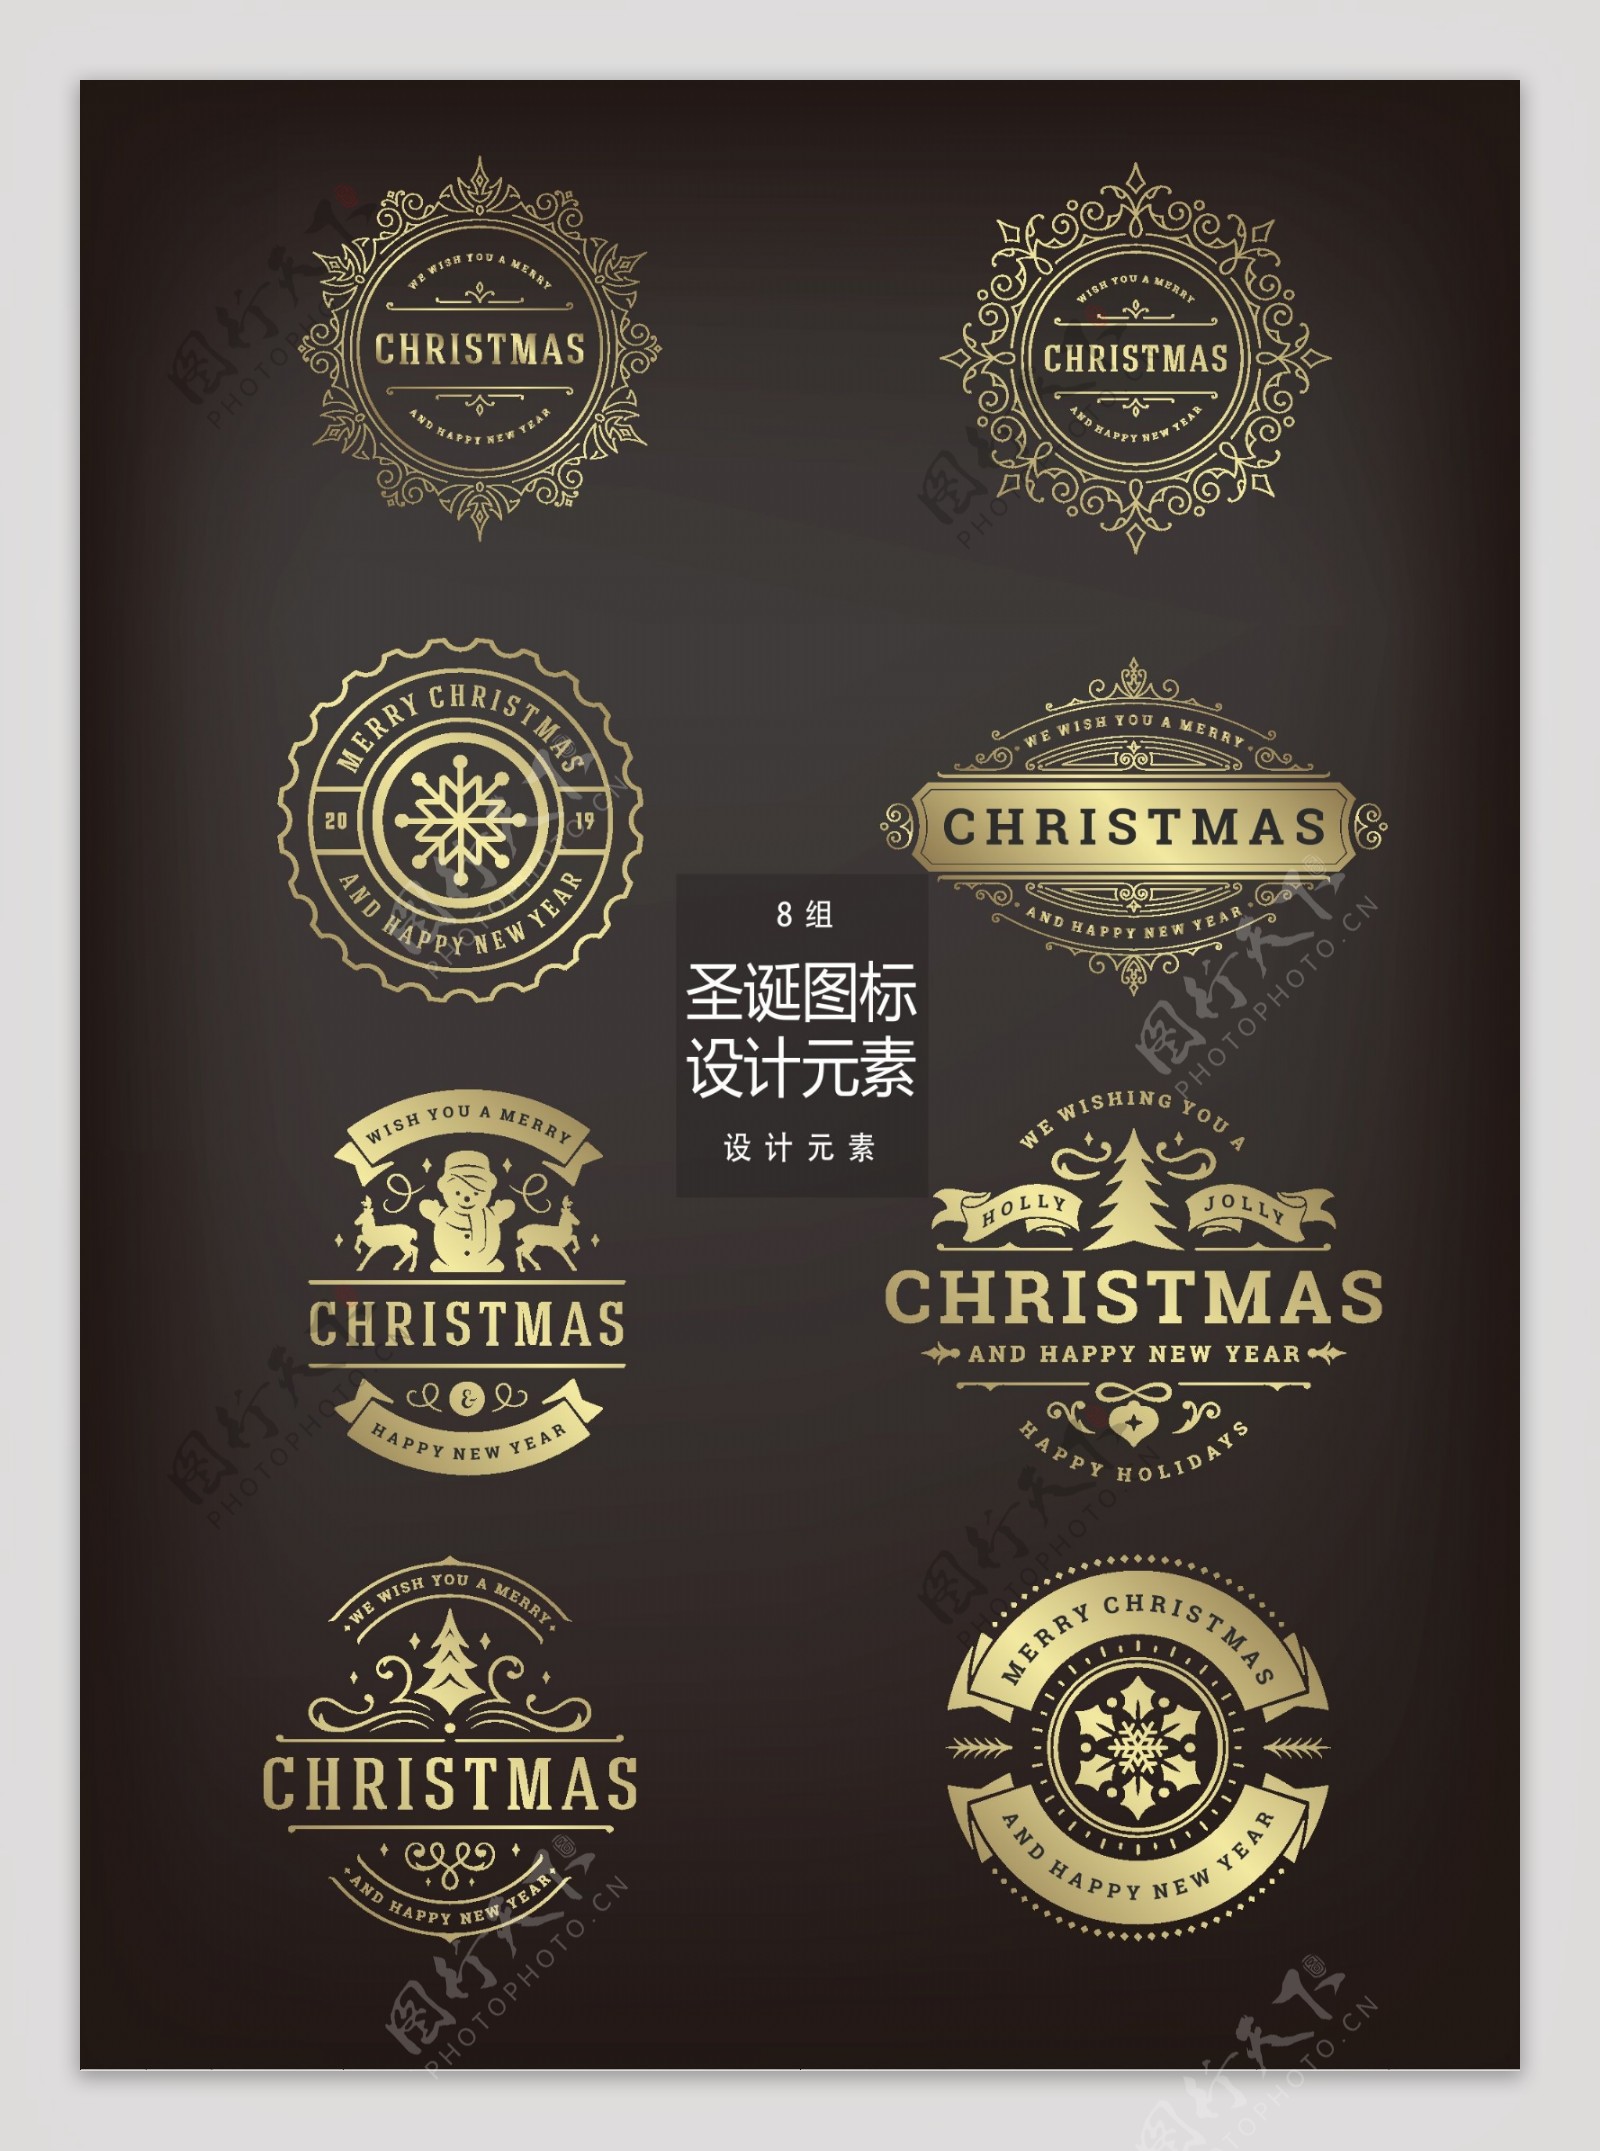 创意金色圣诞图标设计元素